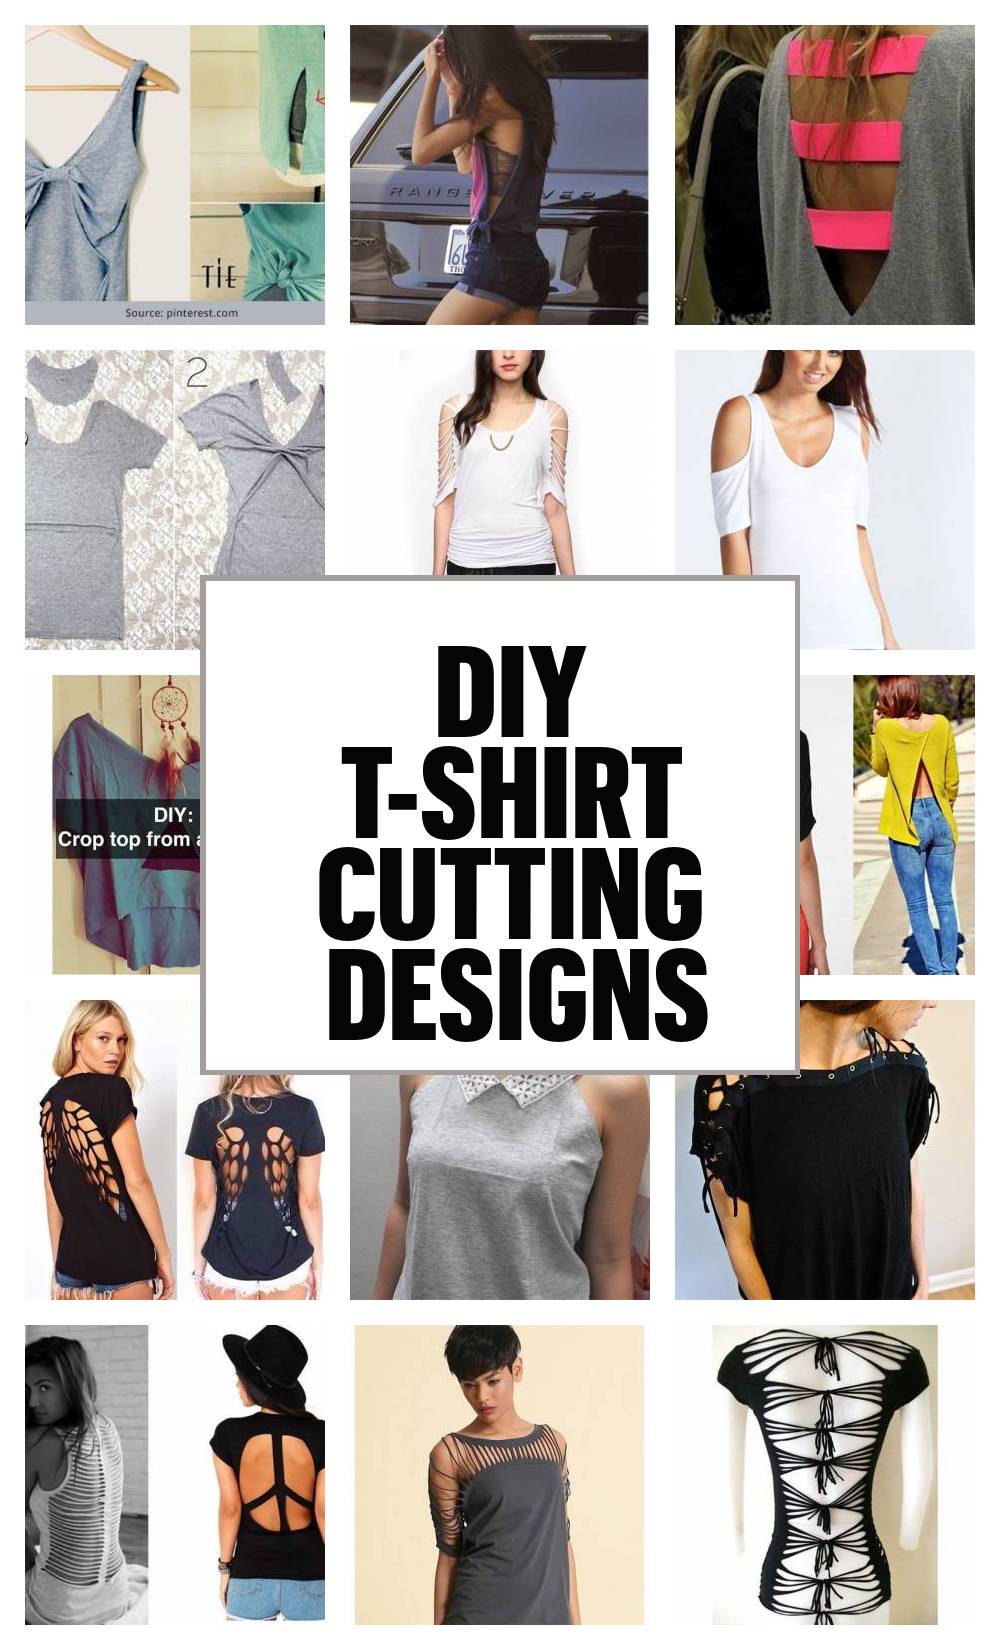 diy shirts ideas